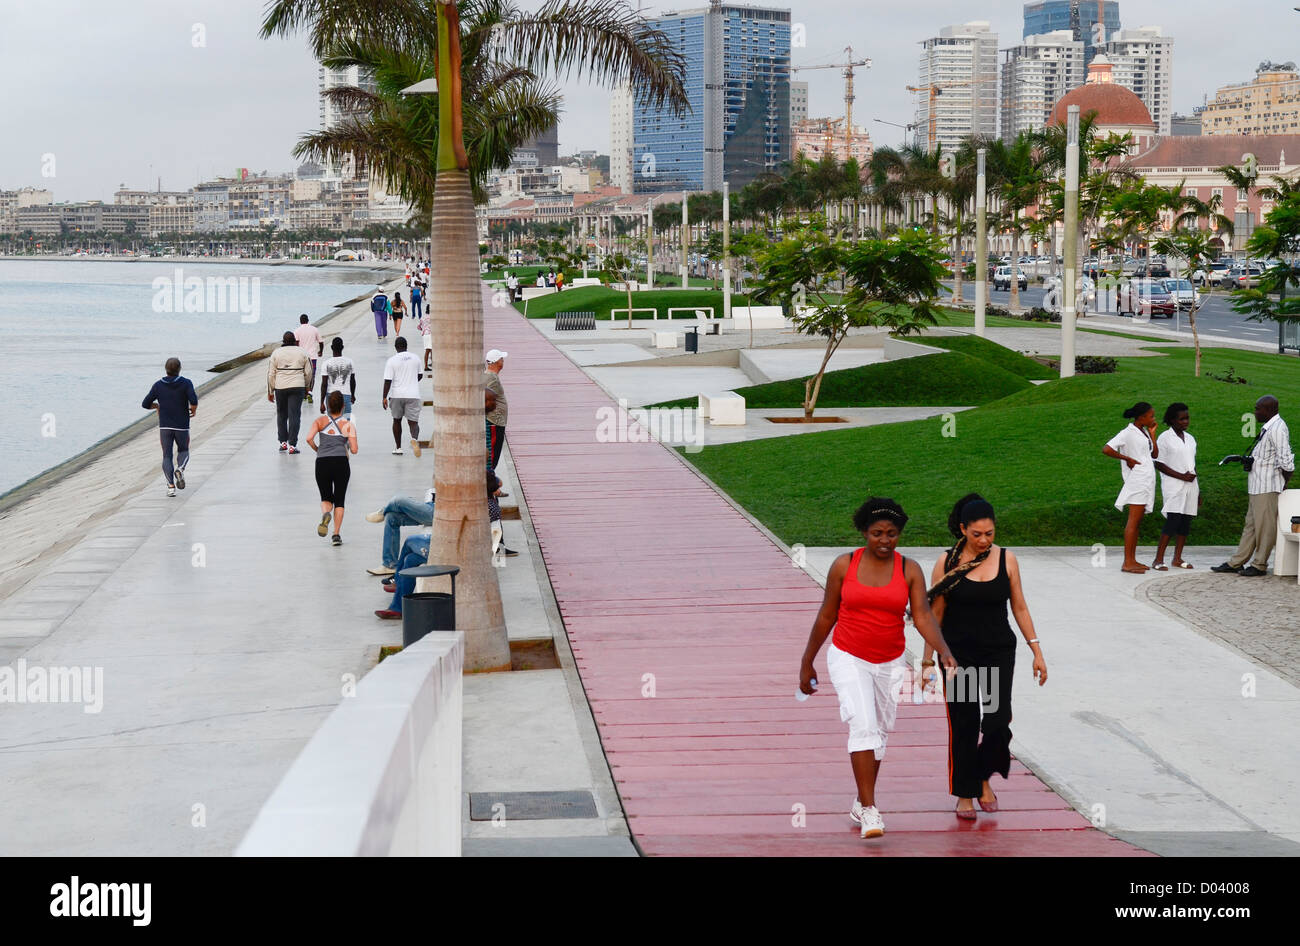 ANGOLA Luanda, la promenade en front de mer, l'avenue Marginal 08 Janvier 4 Banque D'Images